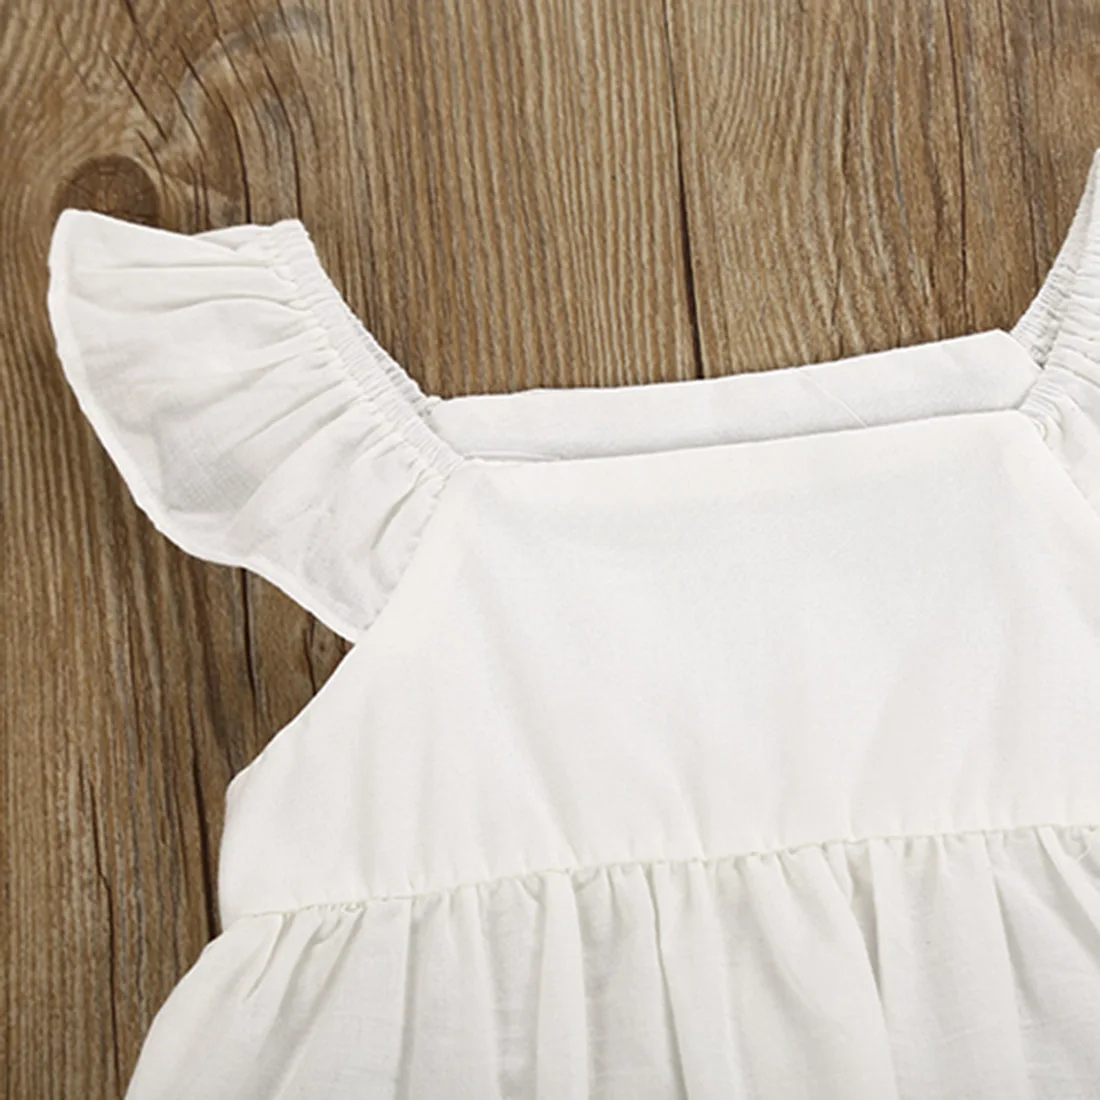 Милое Открытое платье с летящими рукавами для новорожденных девочек, Вечерние Платья с цветочным рисунком, шорты, хлопковые наряды, платья для детей от 0 до 24 месяцев